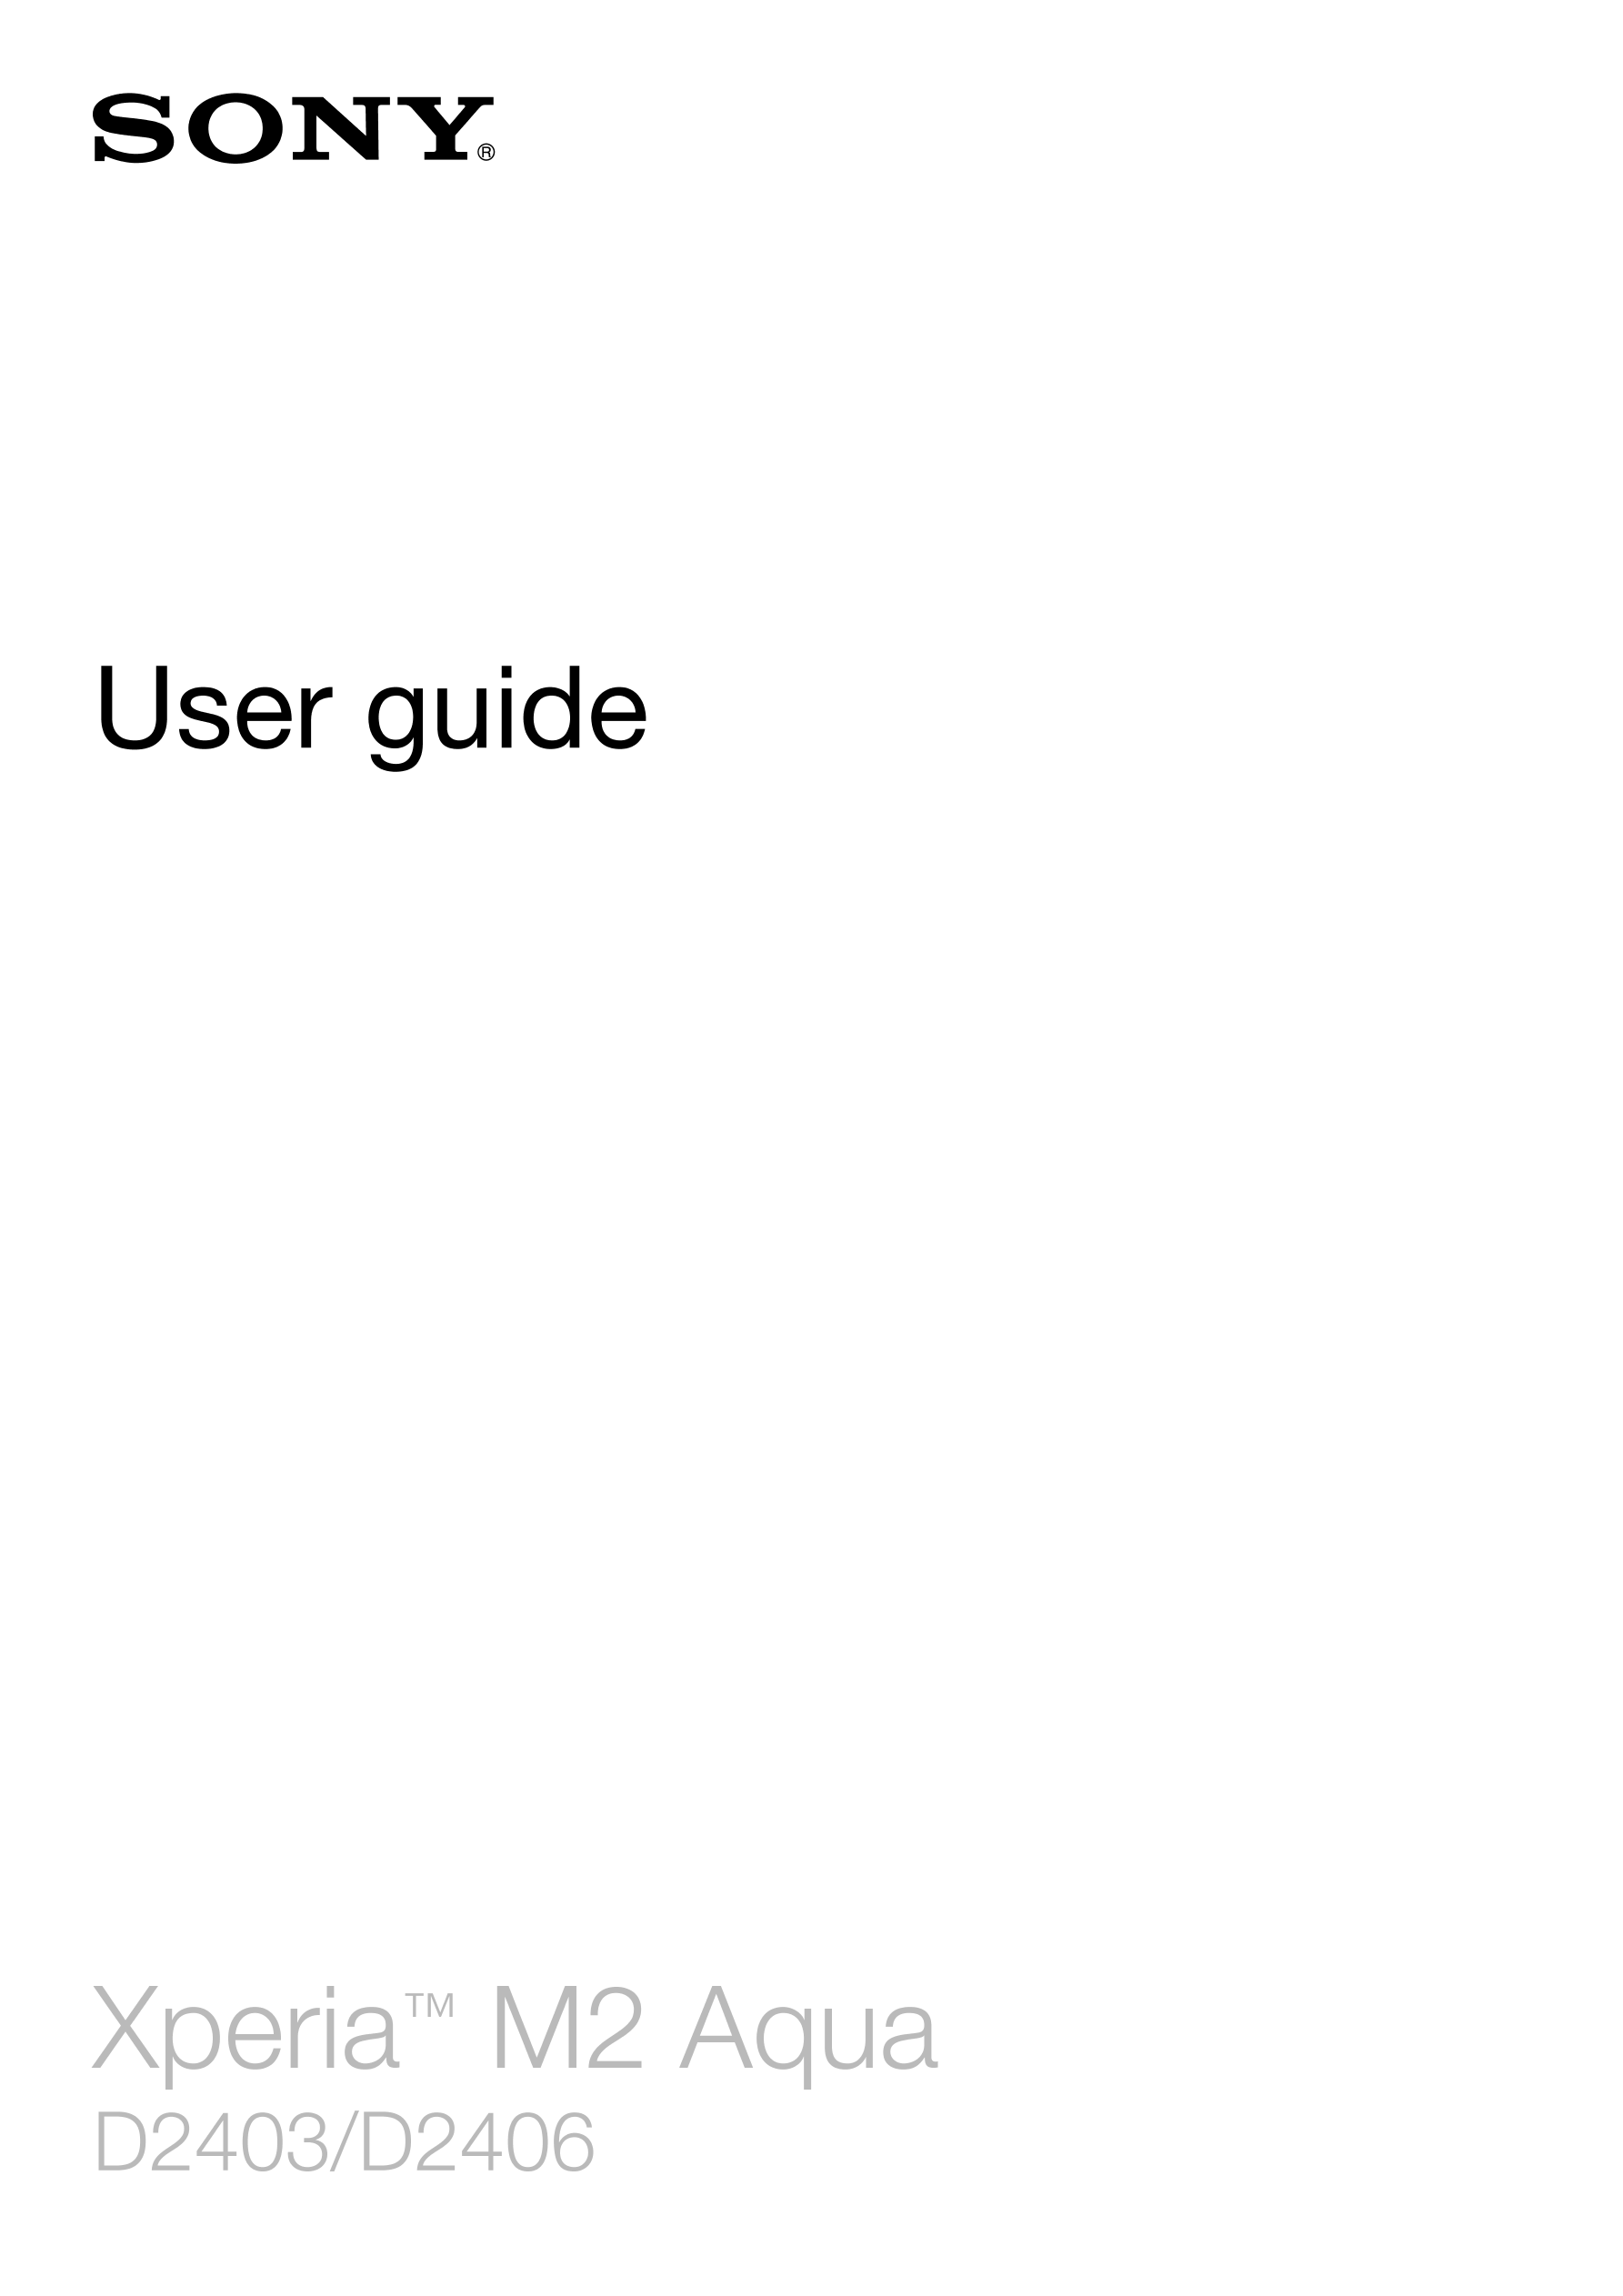 User guide
Xperia™ M2 Aqua
D2403/D2406